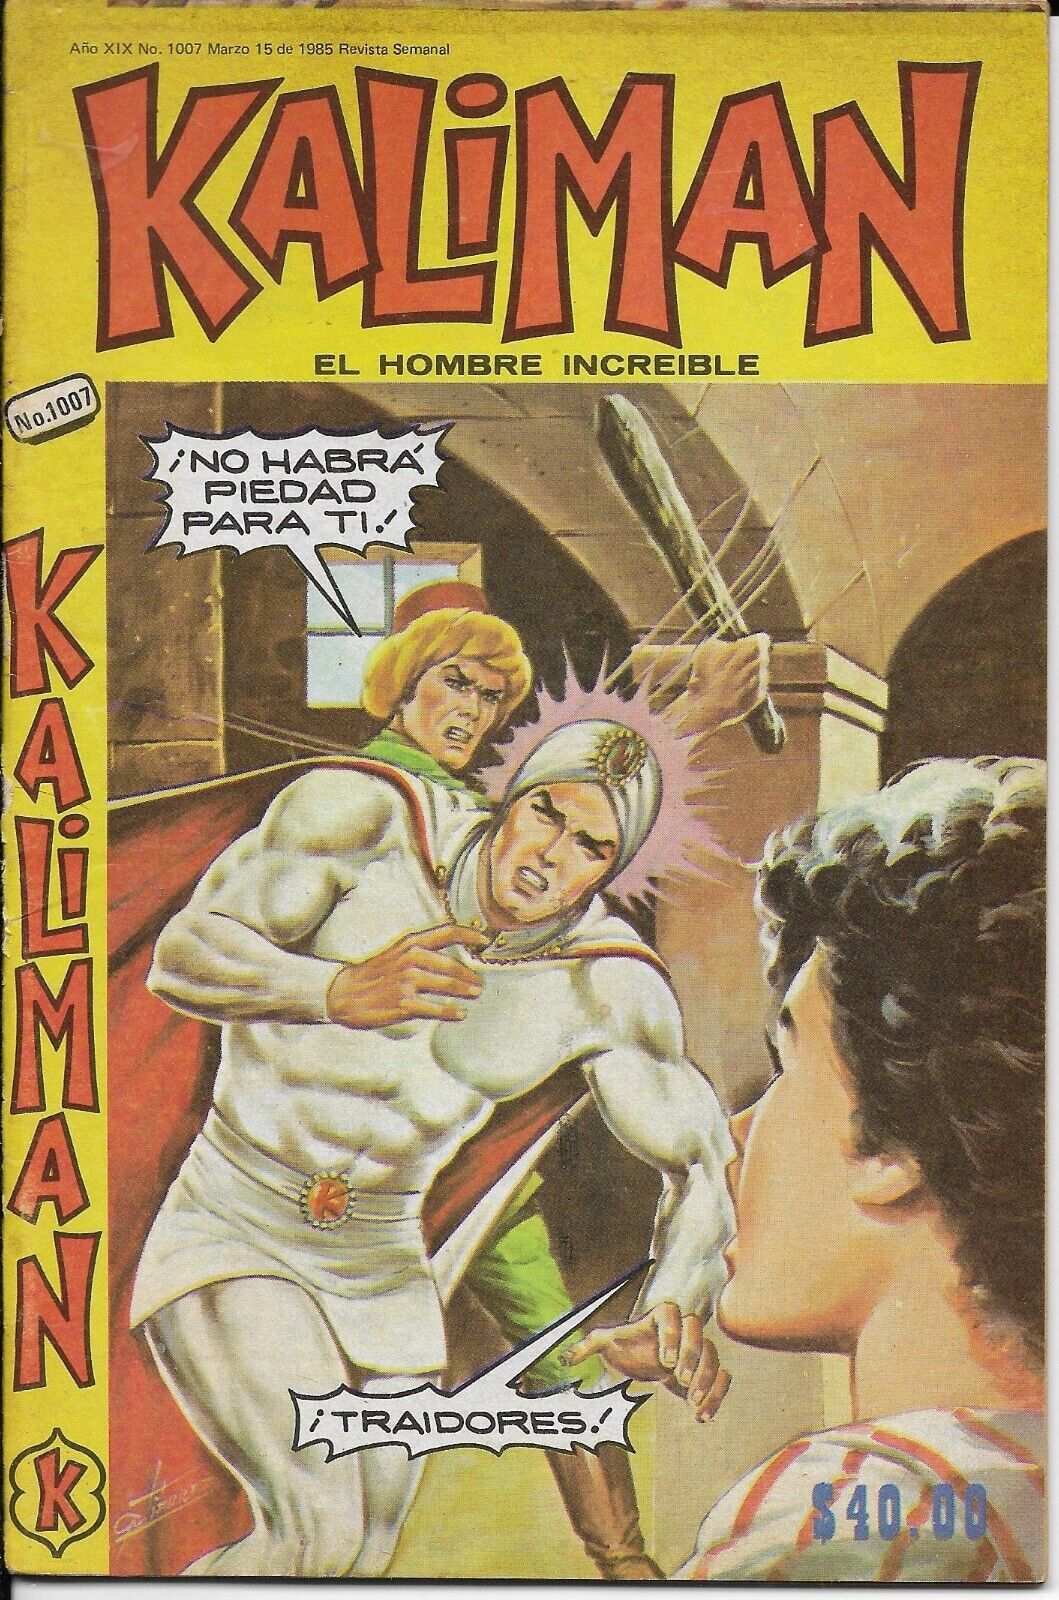 Kaliman El Hombre Increible #1007 - Marzo 15, 1985 - Mexico